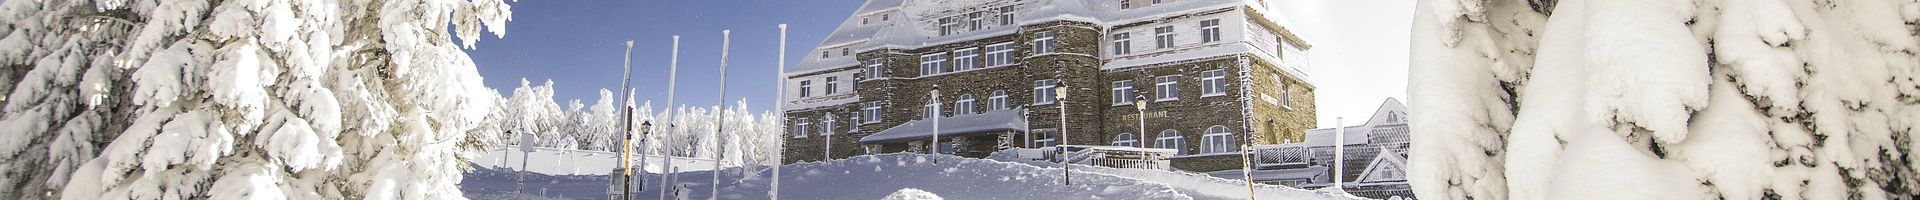 Hotel Sachsenbaude am Fichtelberg im Erzgebirge